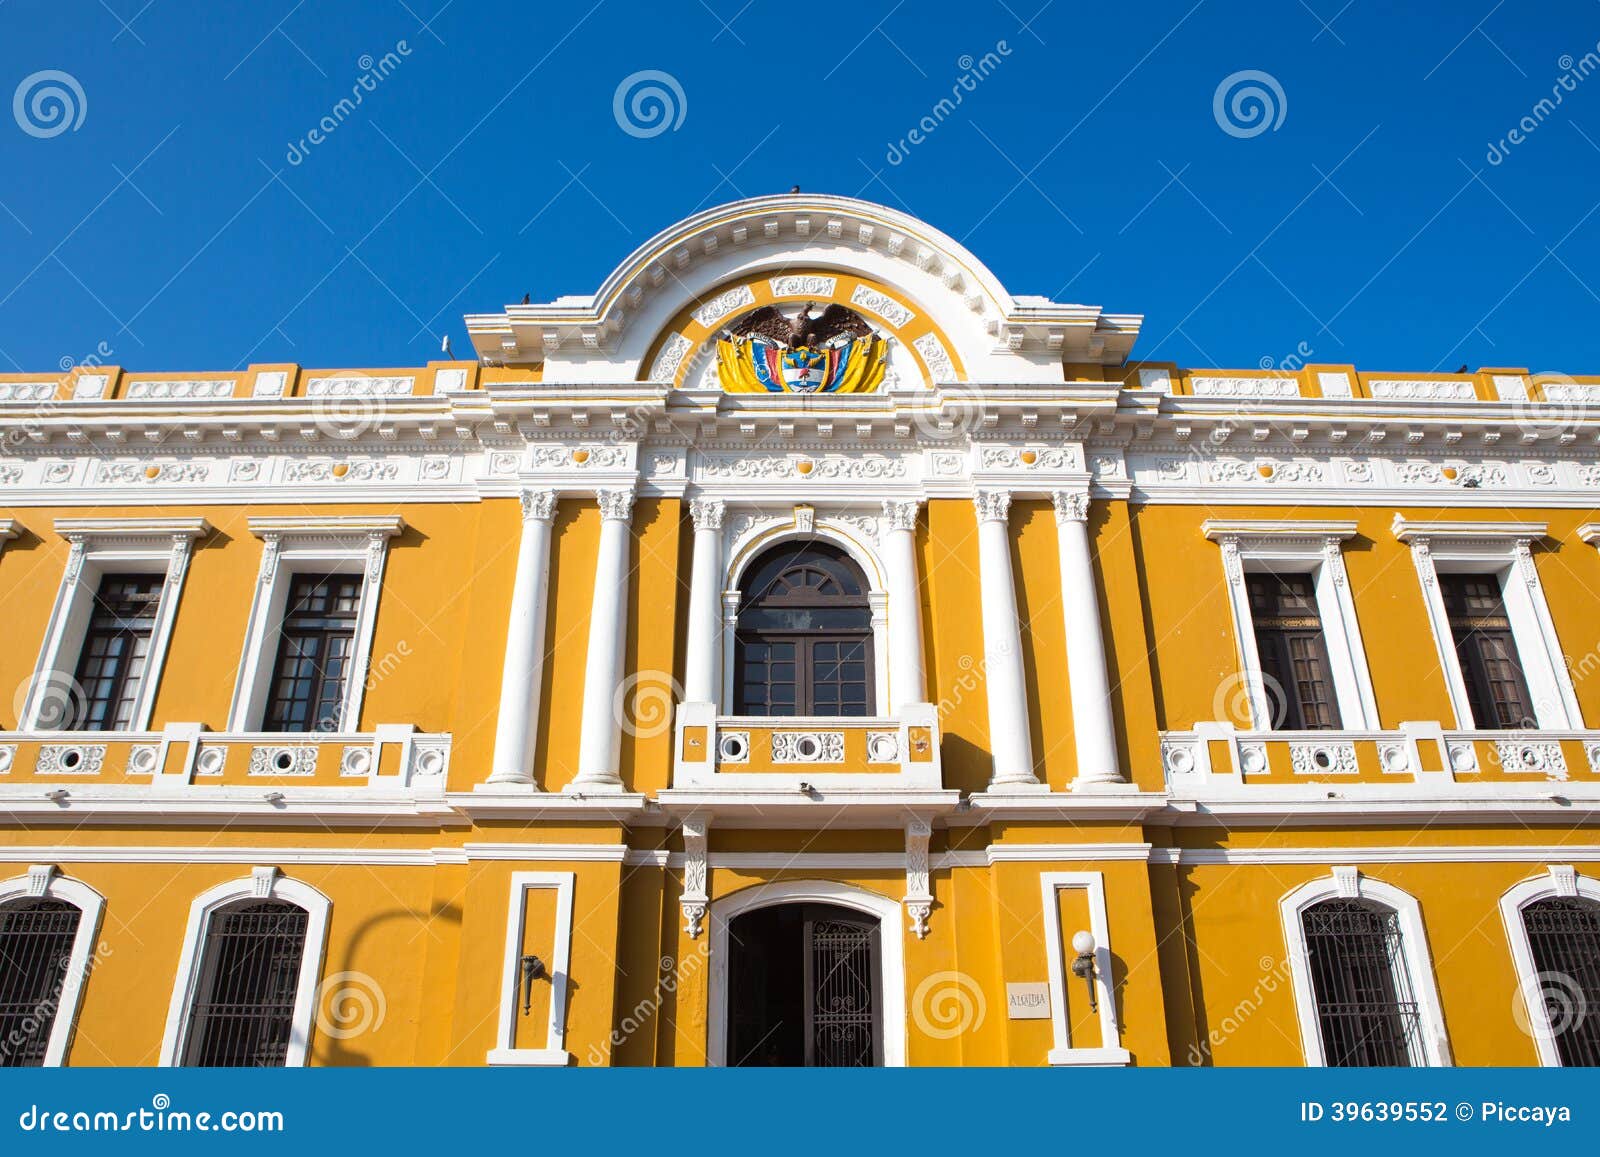 city hall of santa marta, colombia